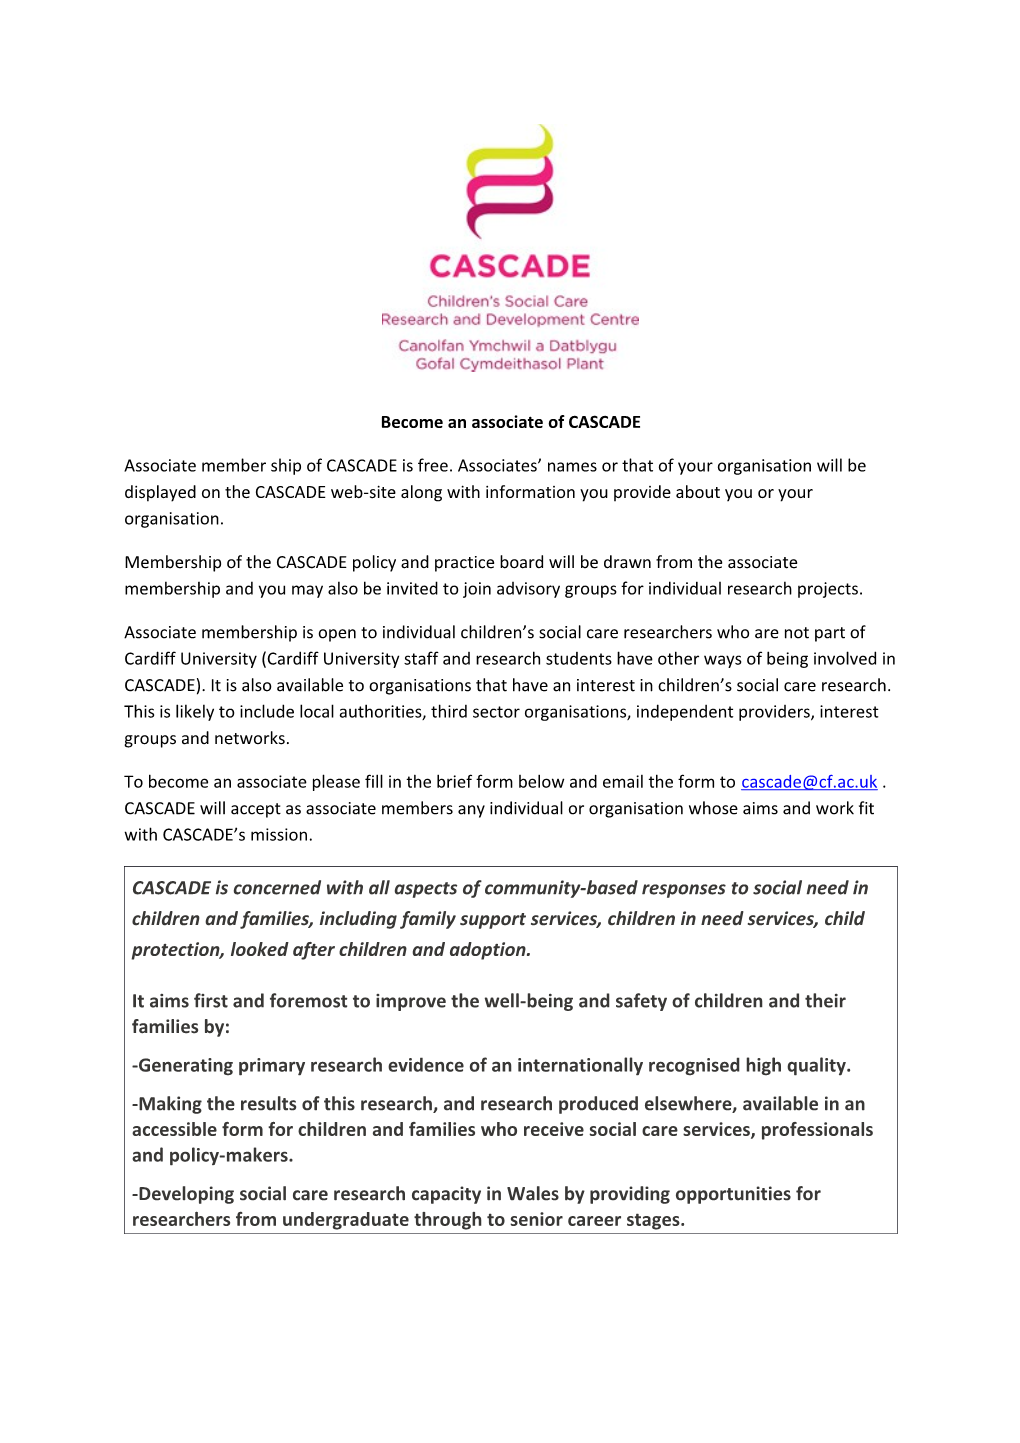 Become an Associate of CASCADE